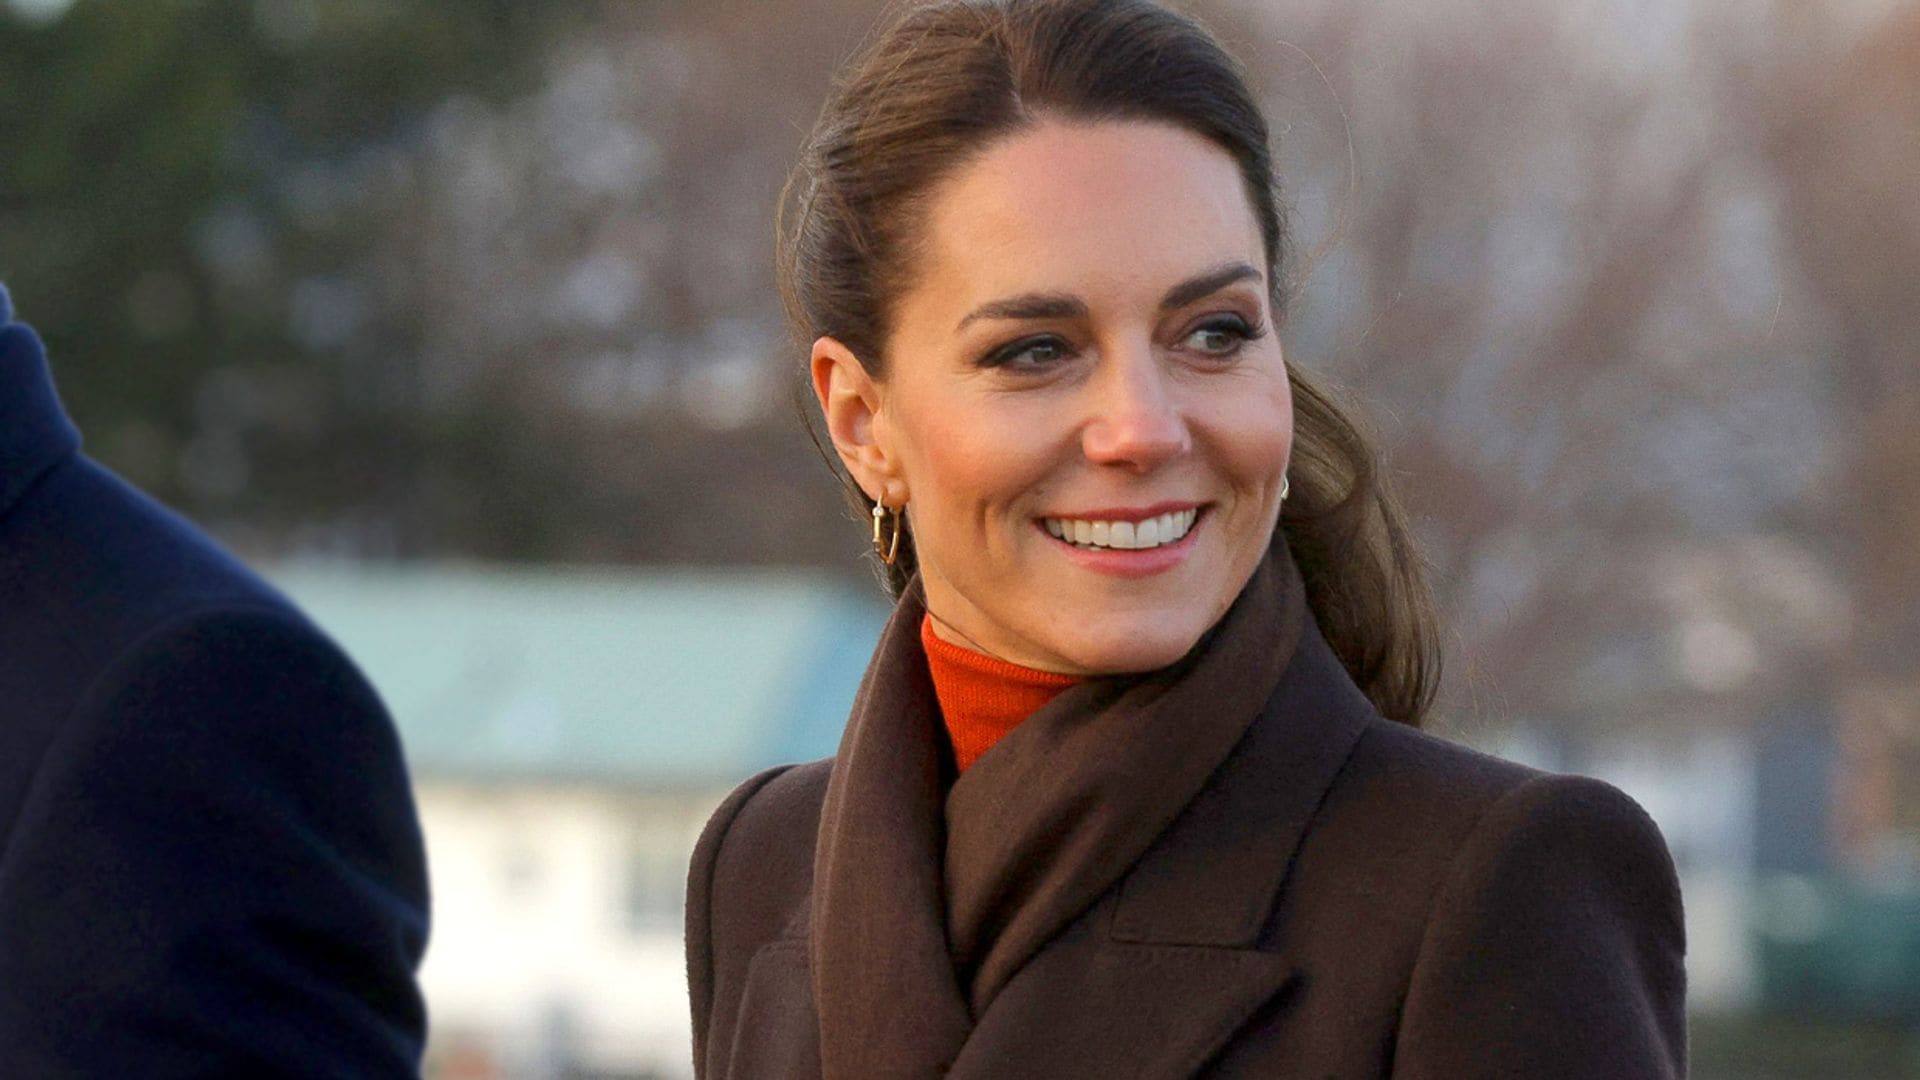 ¡De vuelta a EEUU! Analizamos la moda que Kate Middleton lleva en su viaje a Boston